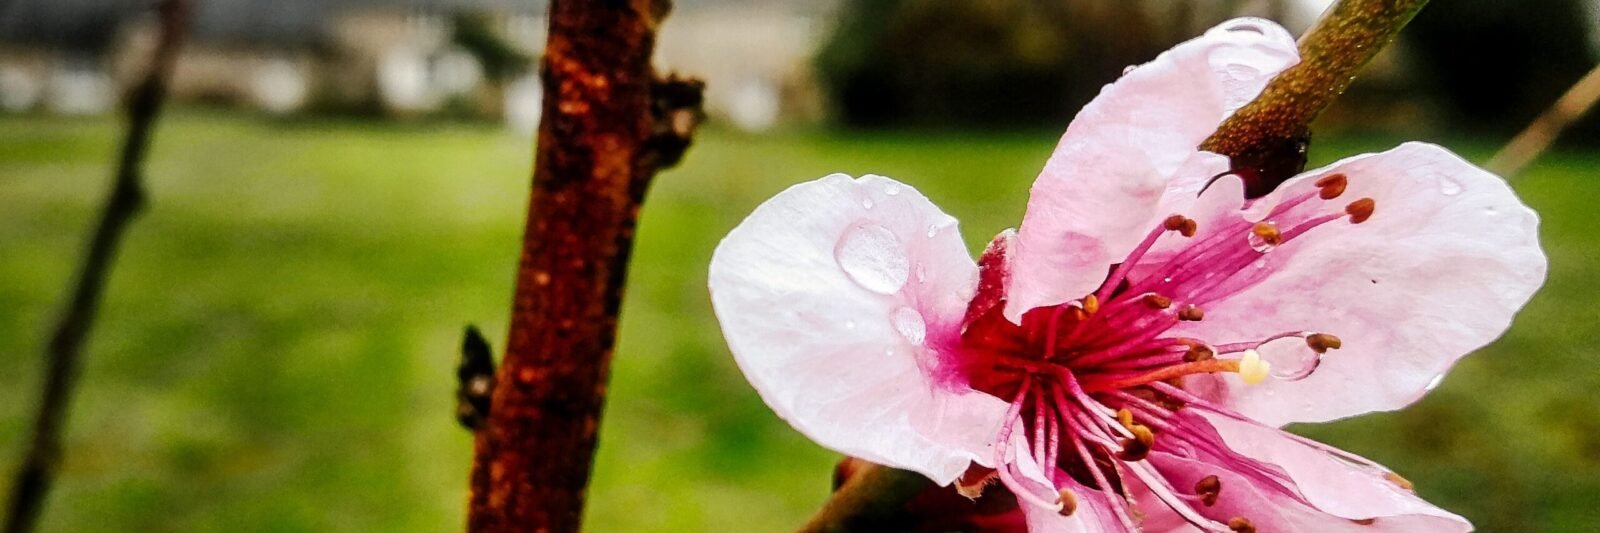 Kerbeleg - Cerisier du japon fleur sakura